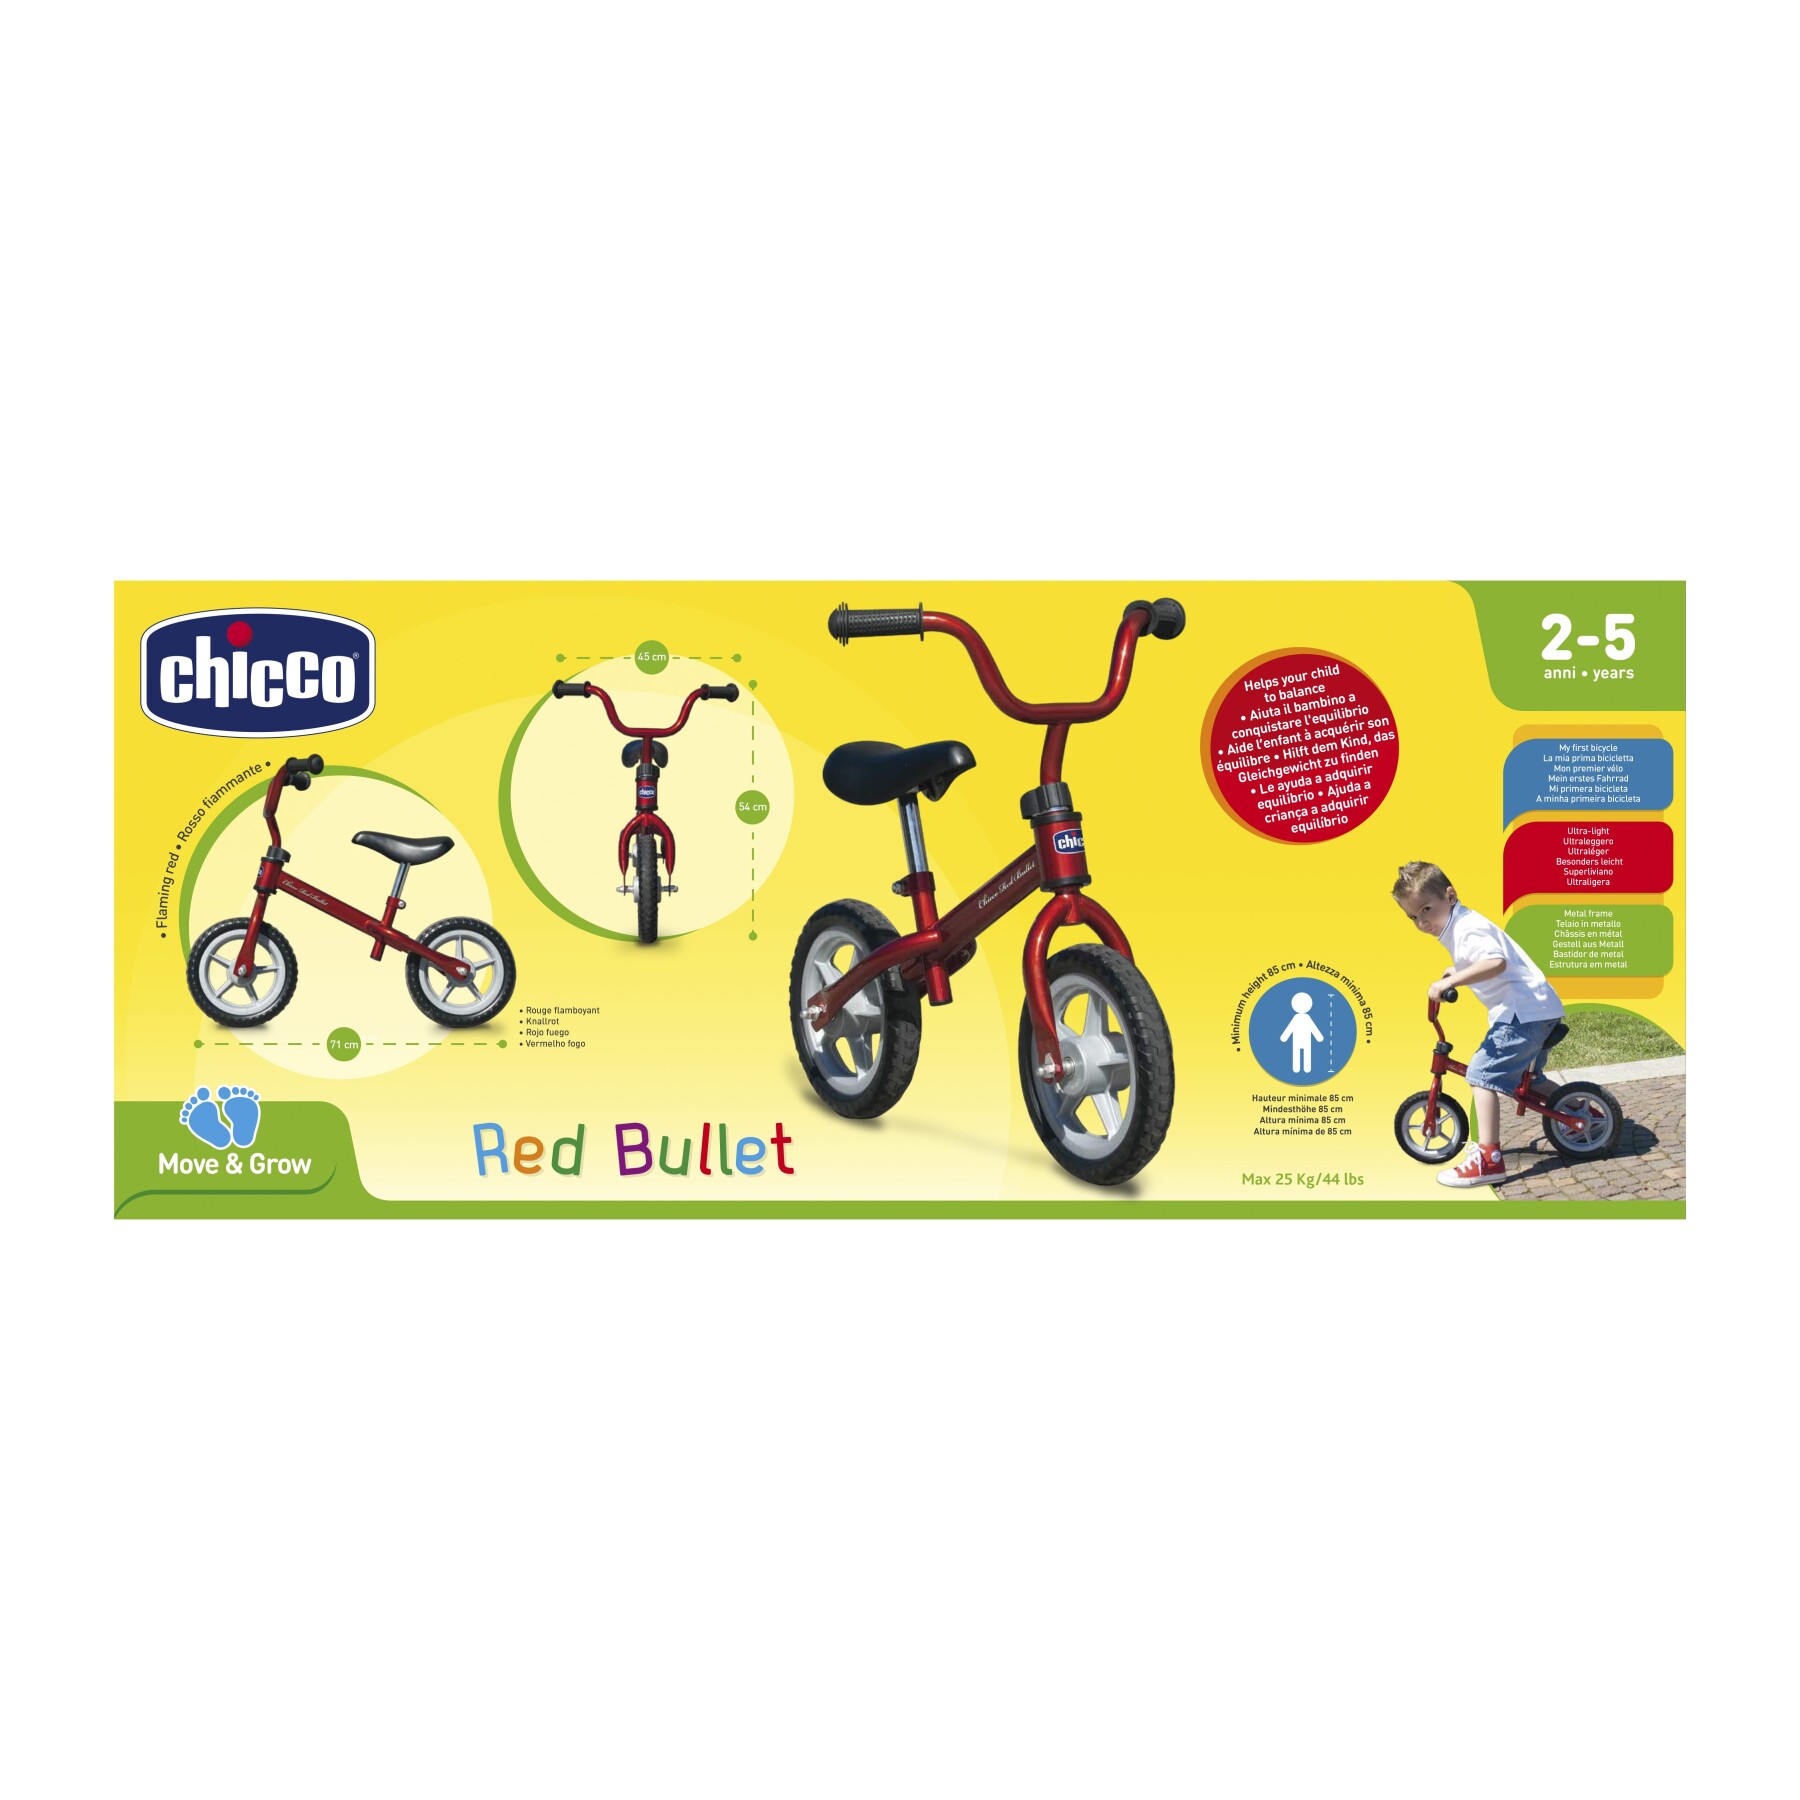 Prima bicicletta red bullet - corsa e crescita per bambini - Chicco